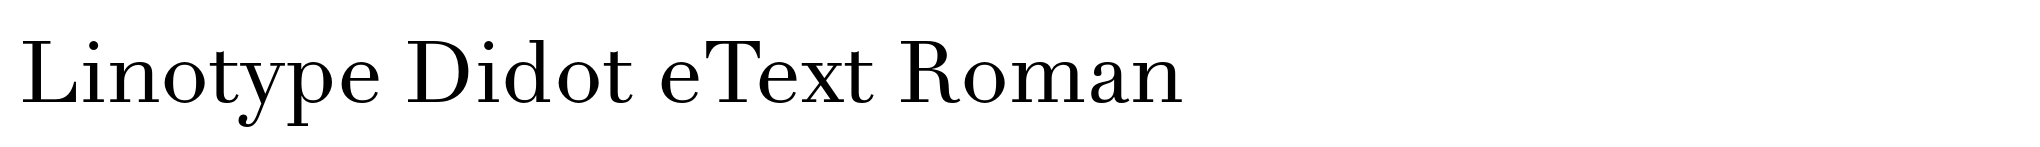 Linotype Didot eText Roman image